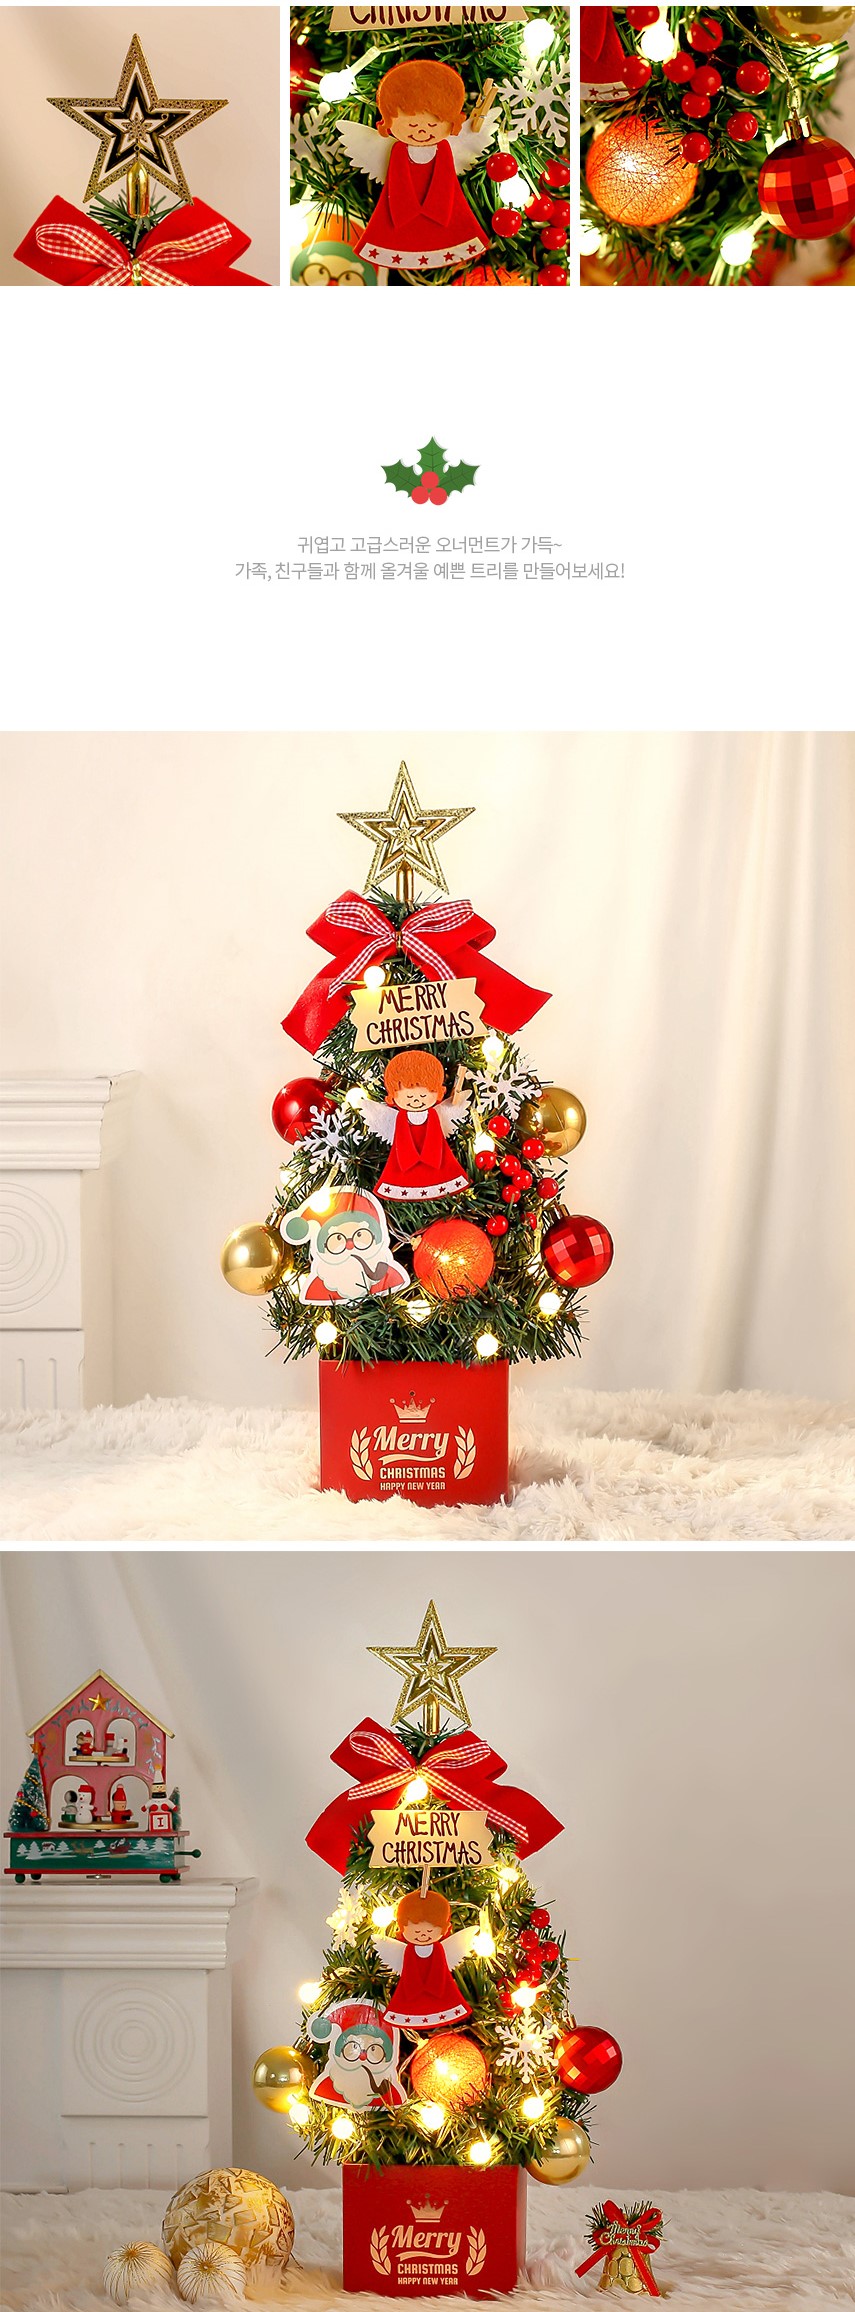 韓國食品-크리스마스 선물세트! 천사의 노래 완제 트리(전구포함) 40cm